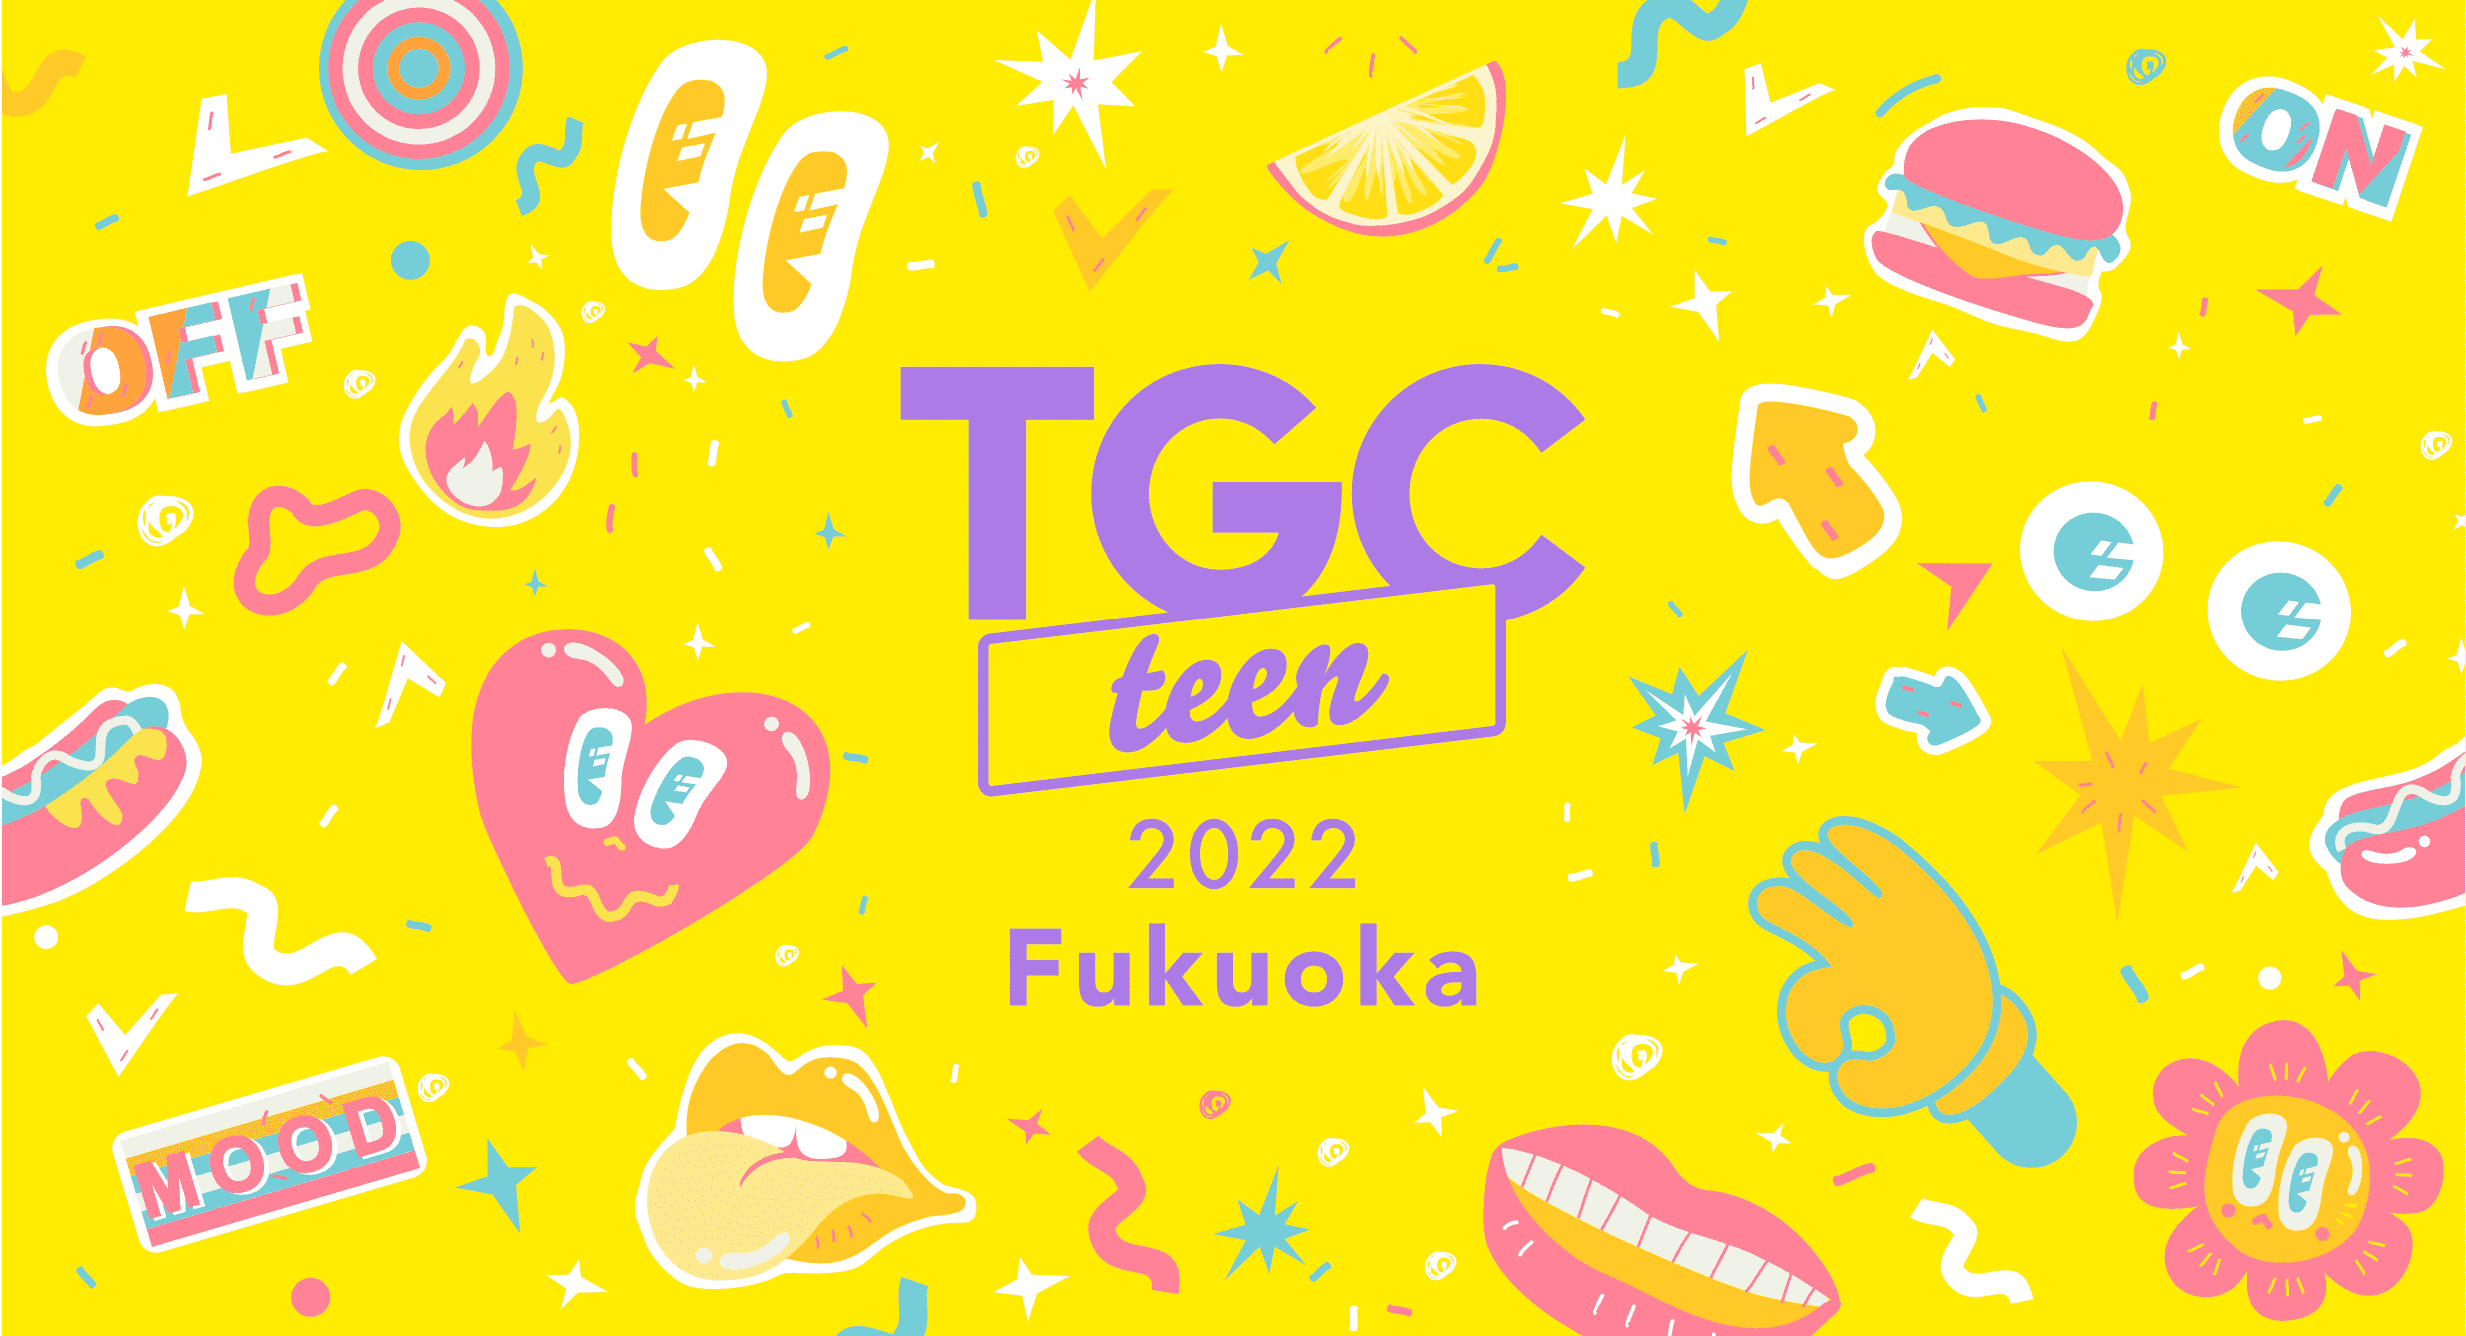 TGC teen 2022 Fukuoka